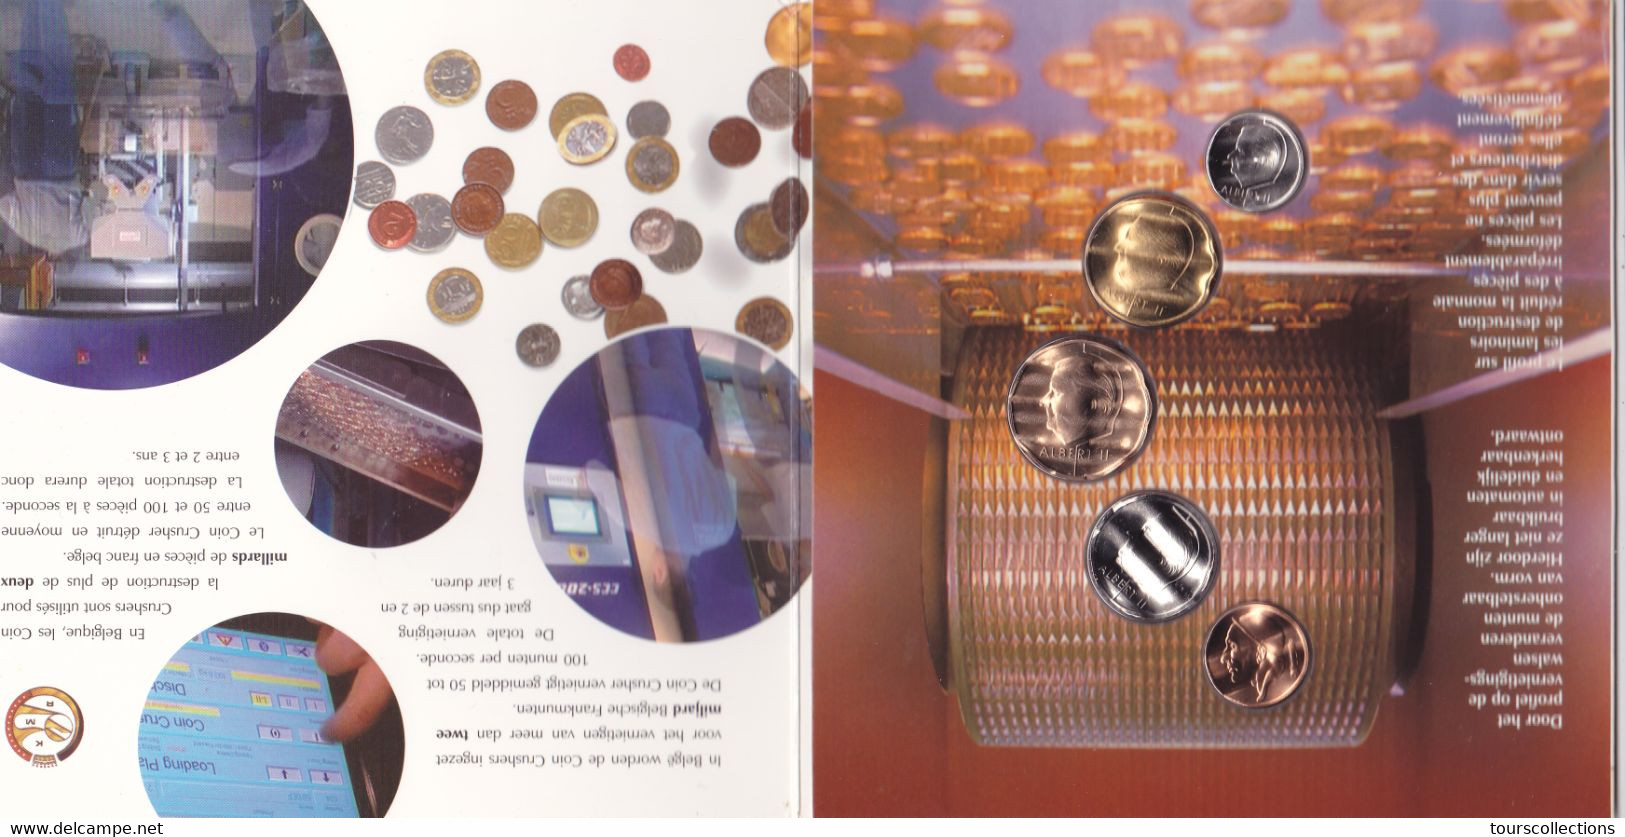 BU FDC BELGIQUE 2002 COIN CRUSHER Monnaies Albert II De 1998 Et 1999 Adieu Le Franc Bonjour L'Euro - FDC, BU, BE & Coffrets